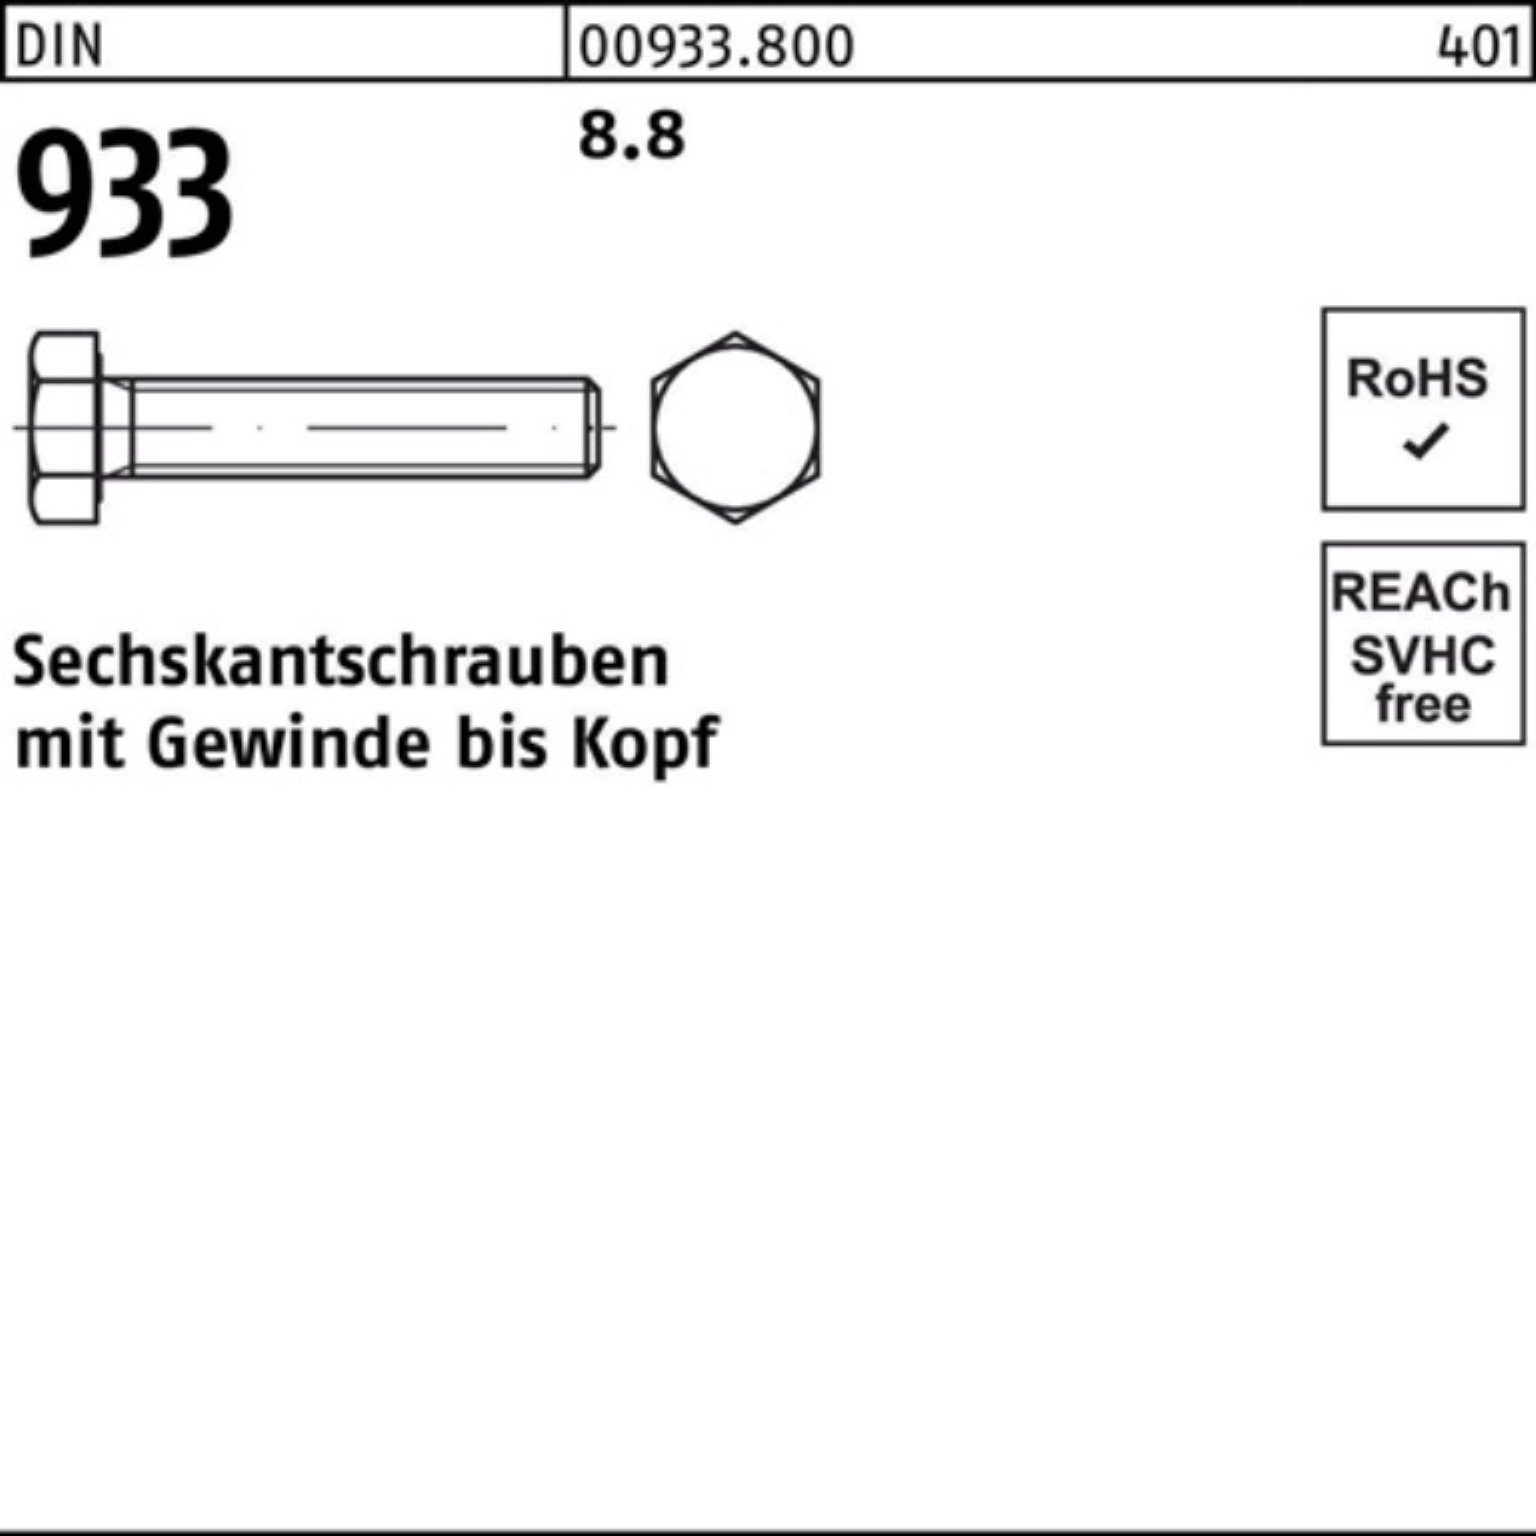 M24x Reyher Pack 8.8 VG 933 Sechskantschraube 100er 10 90 DIN 933 Sechskantschraube DIN Stück